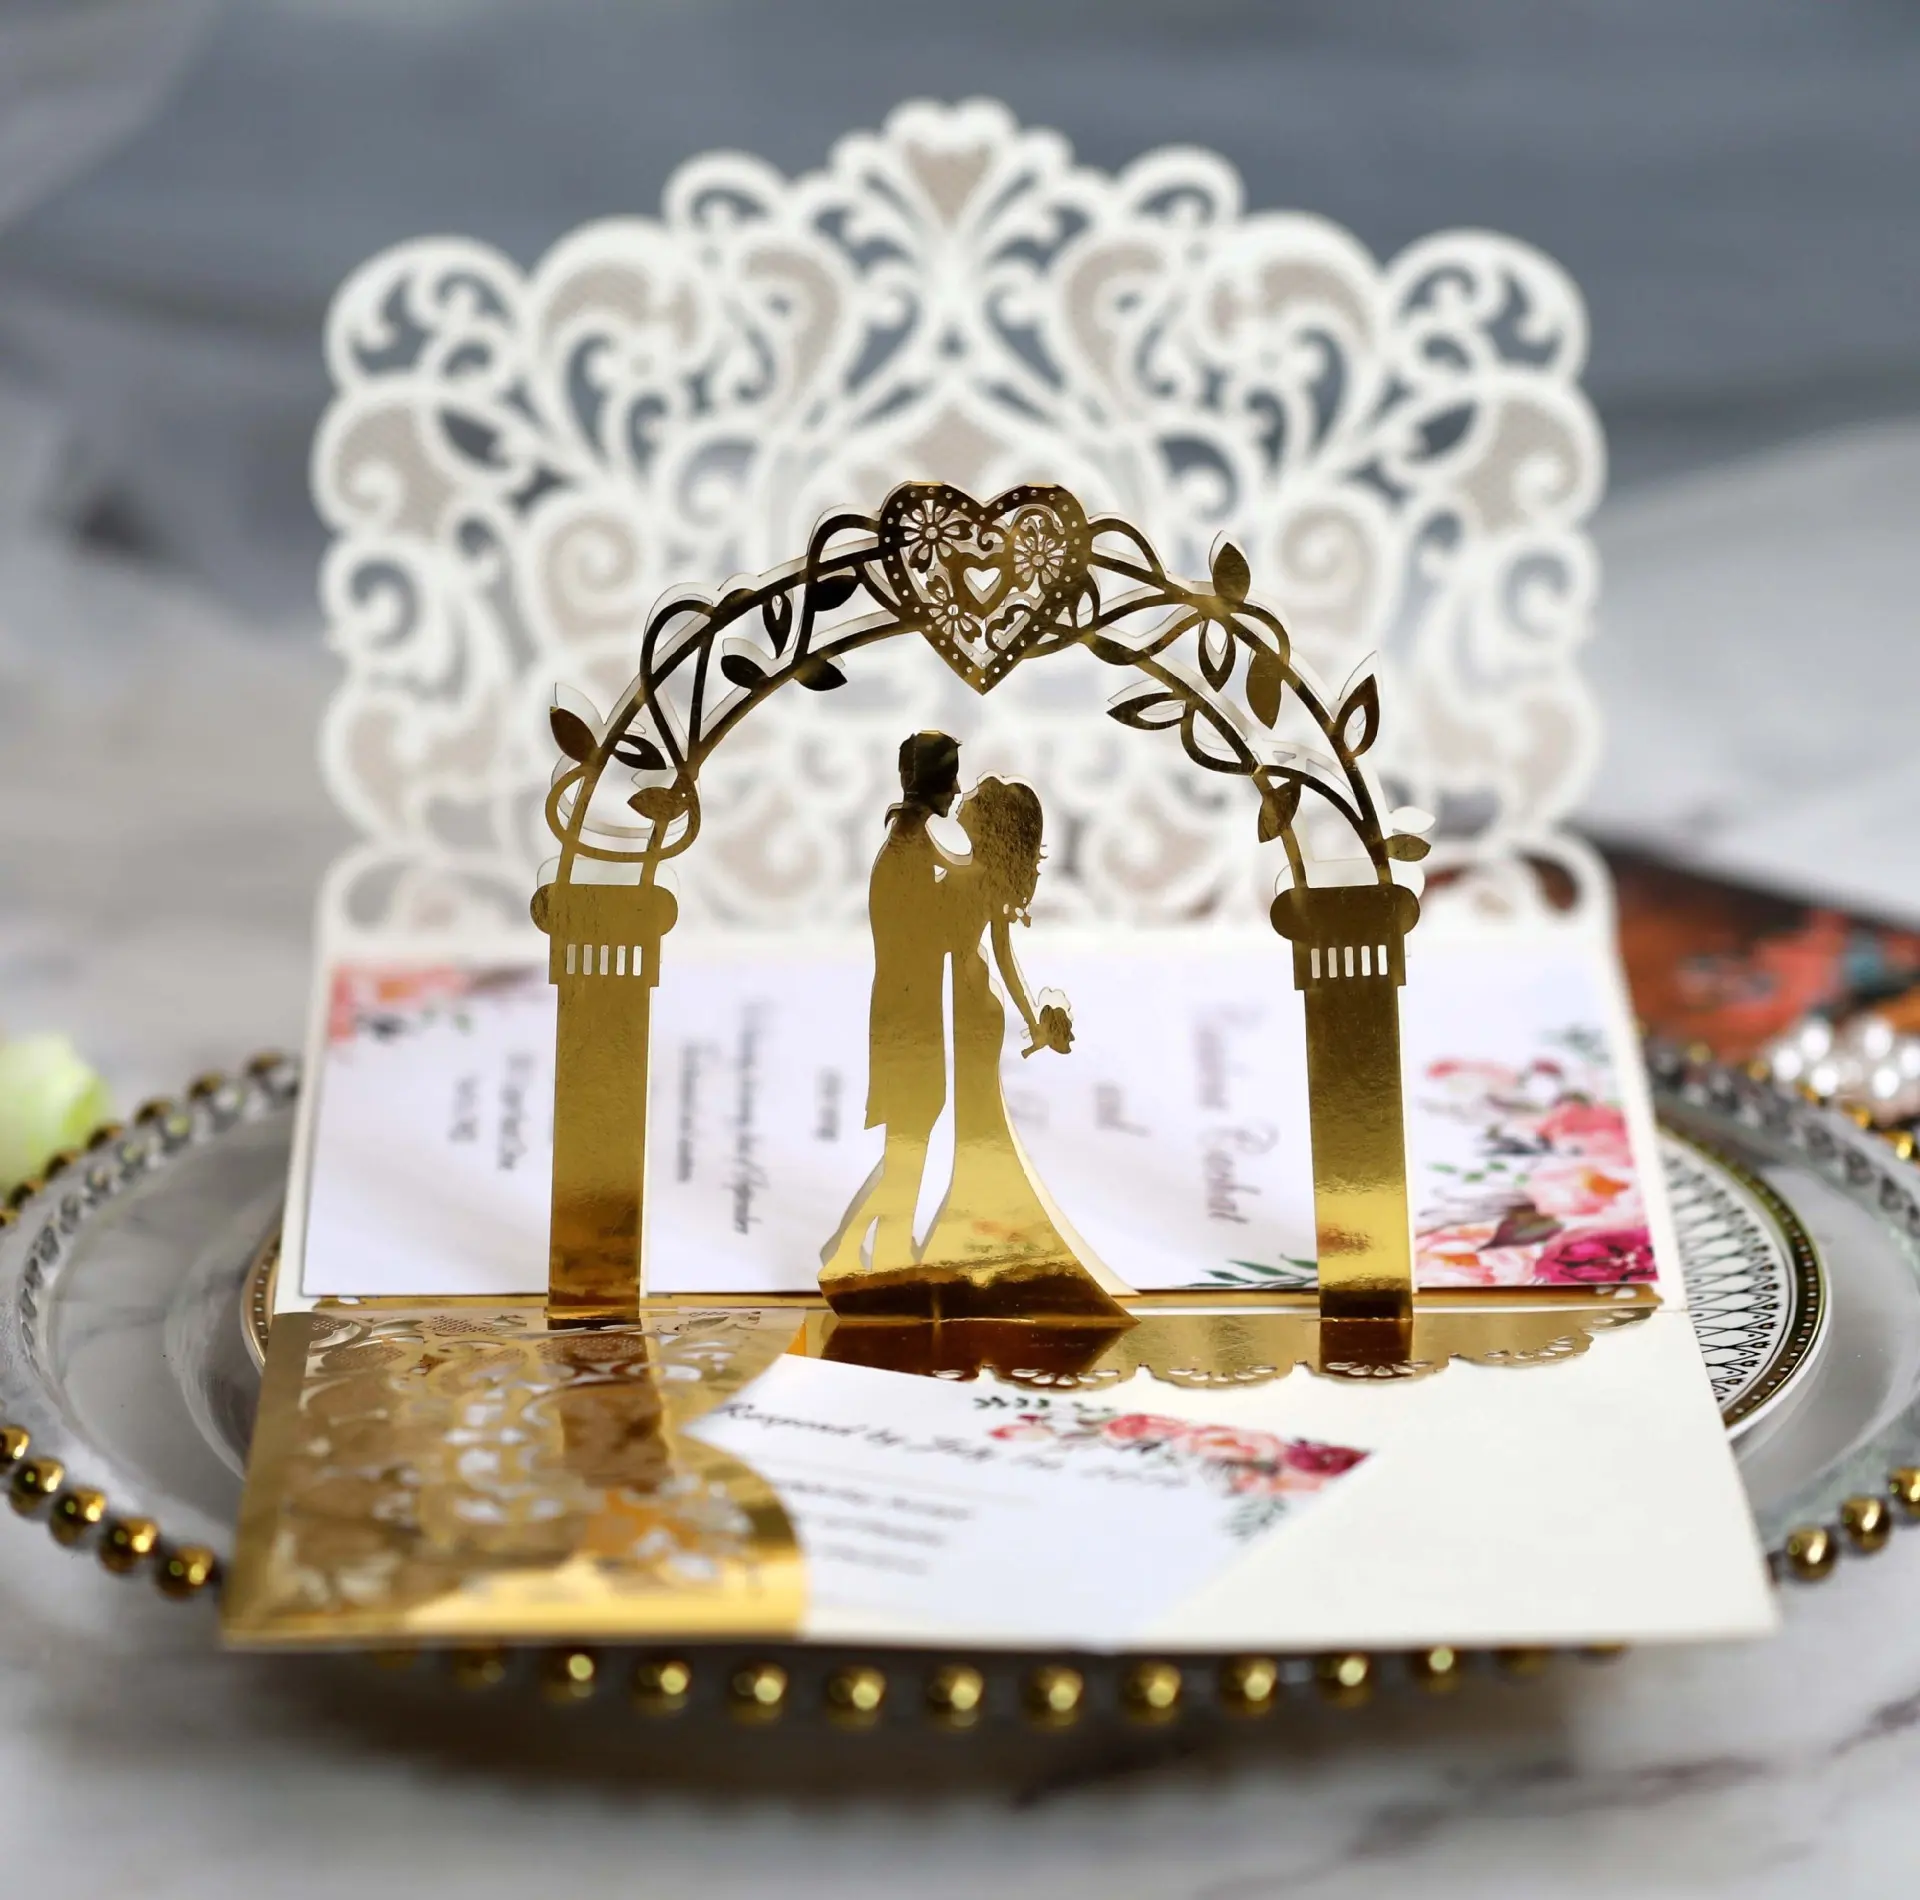 Laser geschnittene Hochzeits einladung karten mit Umschlägen für Hochzeitsgeburtstagsverlobungs-Brautduschen-Abschluss feier